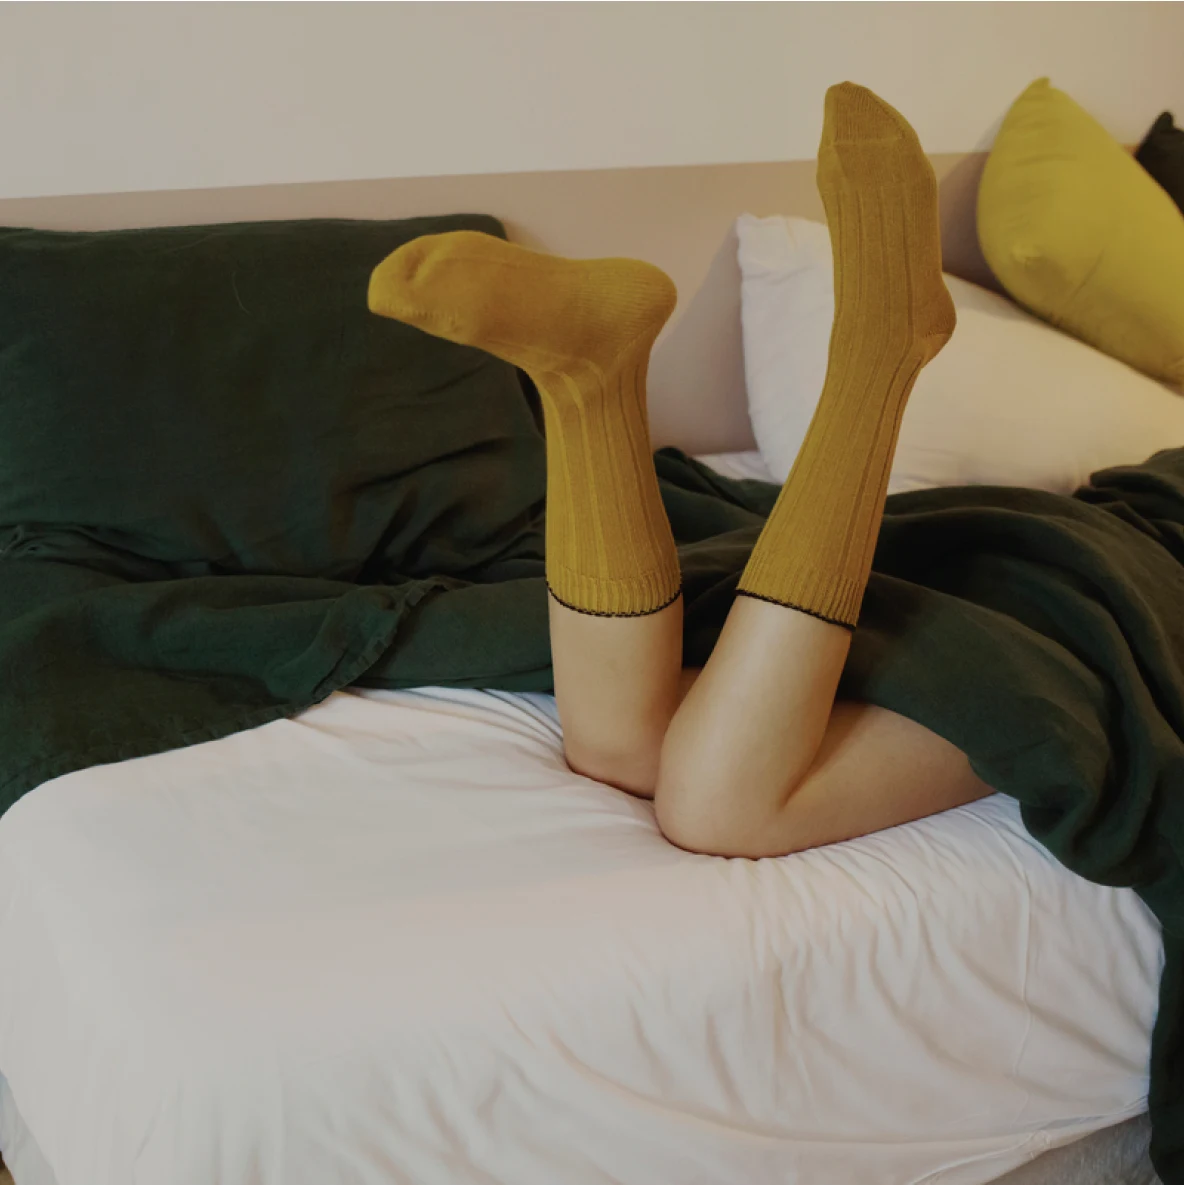 Foto das pernas de uma mulher usando meias cor de mostarda, coberta por um cobertor verde e deitada de bruços em uma cama com travesseiros variados.